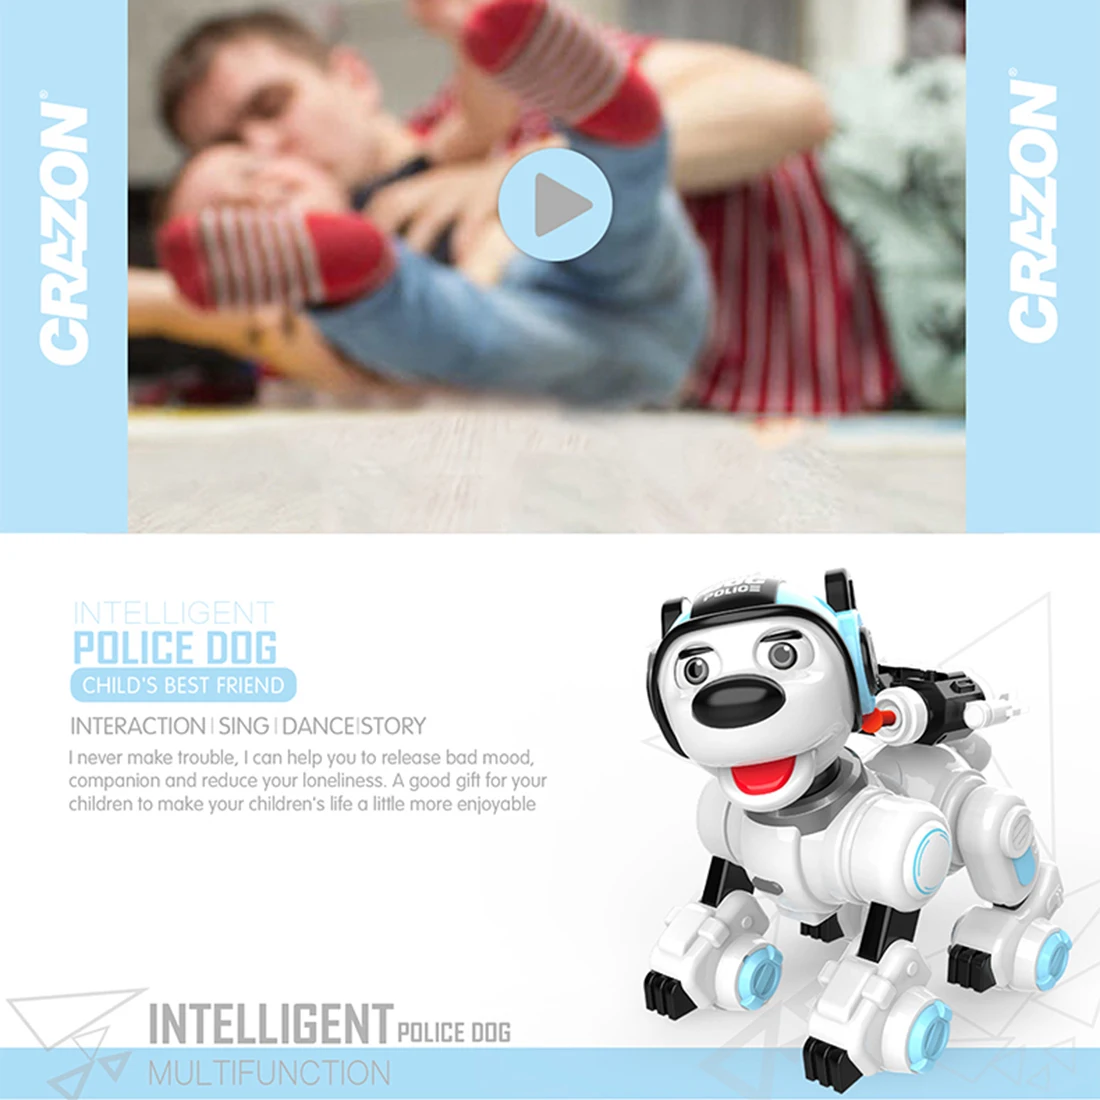 Детская интеллектуальная роботизированная собака с дистанционным управлением, Интерактивная ходьба, танцы, пение, программируемый робот, Полицейская собака для детей, подарок